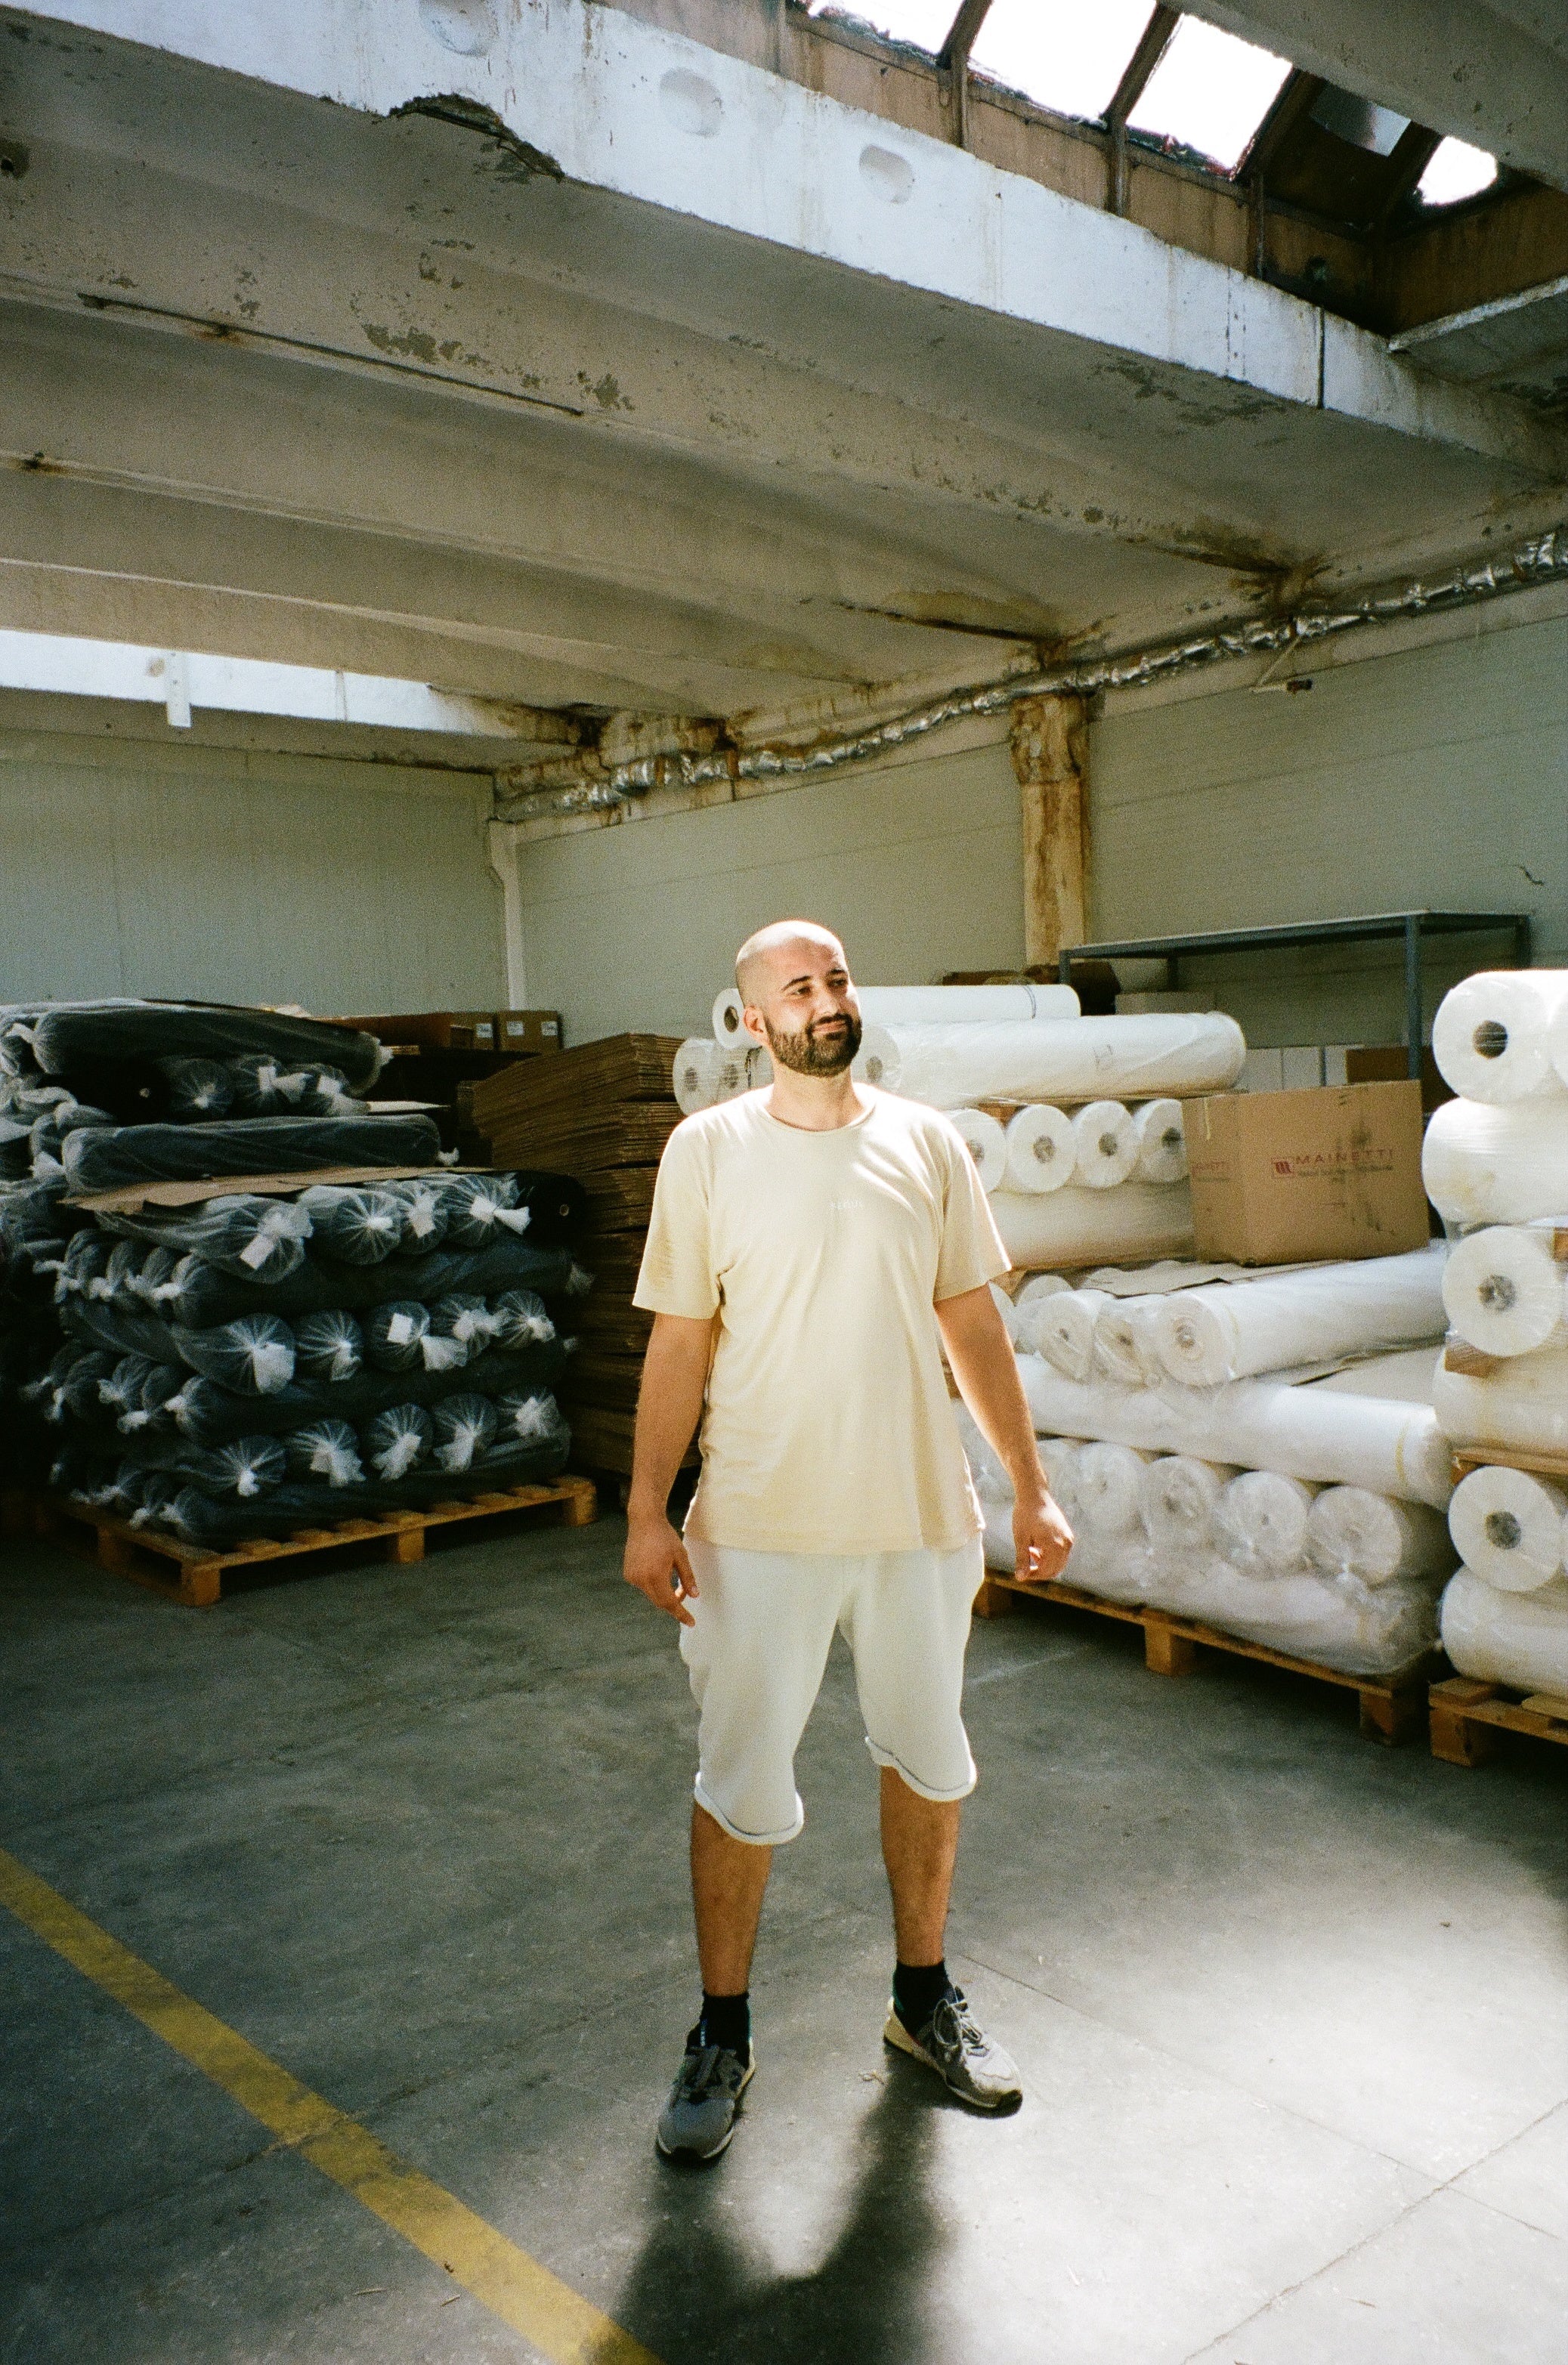 Jean travaillant en Logistique & Production chez noyoco